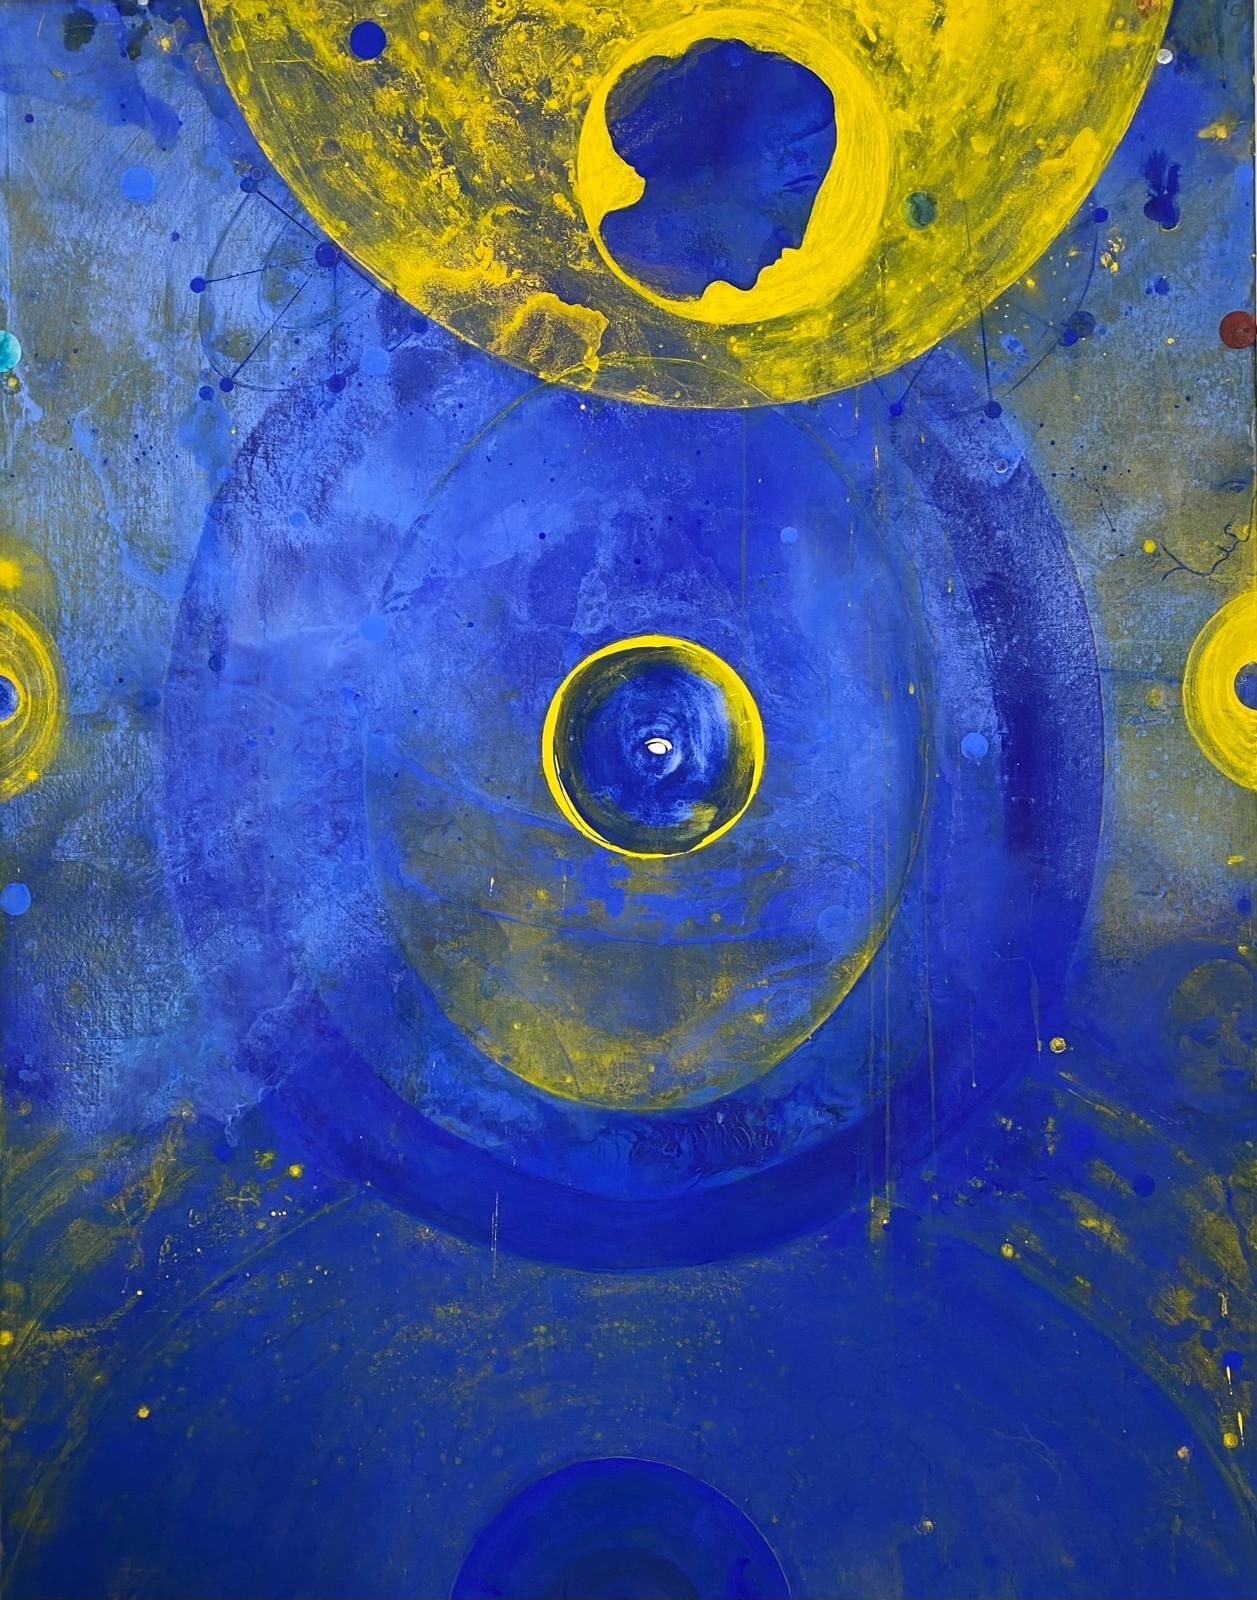 Emilio D'Elia "Al riparo dai rumori del mondo" alla Galleria Orizzonti Arte Contemporanea di Ostuni. Opere inedite su carta, energia e cosmo.